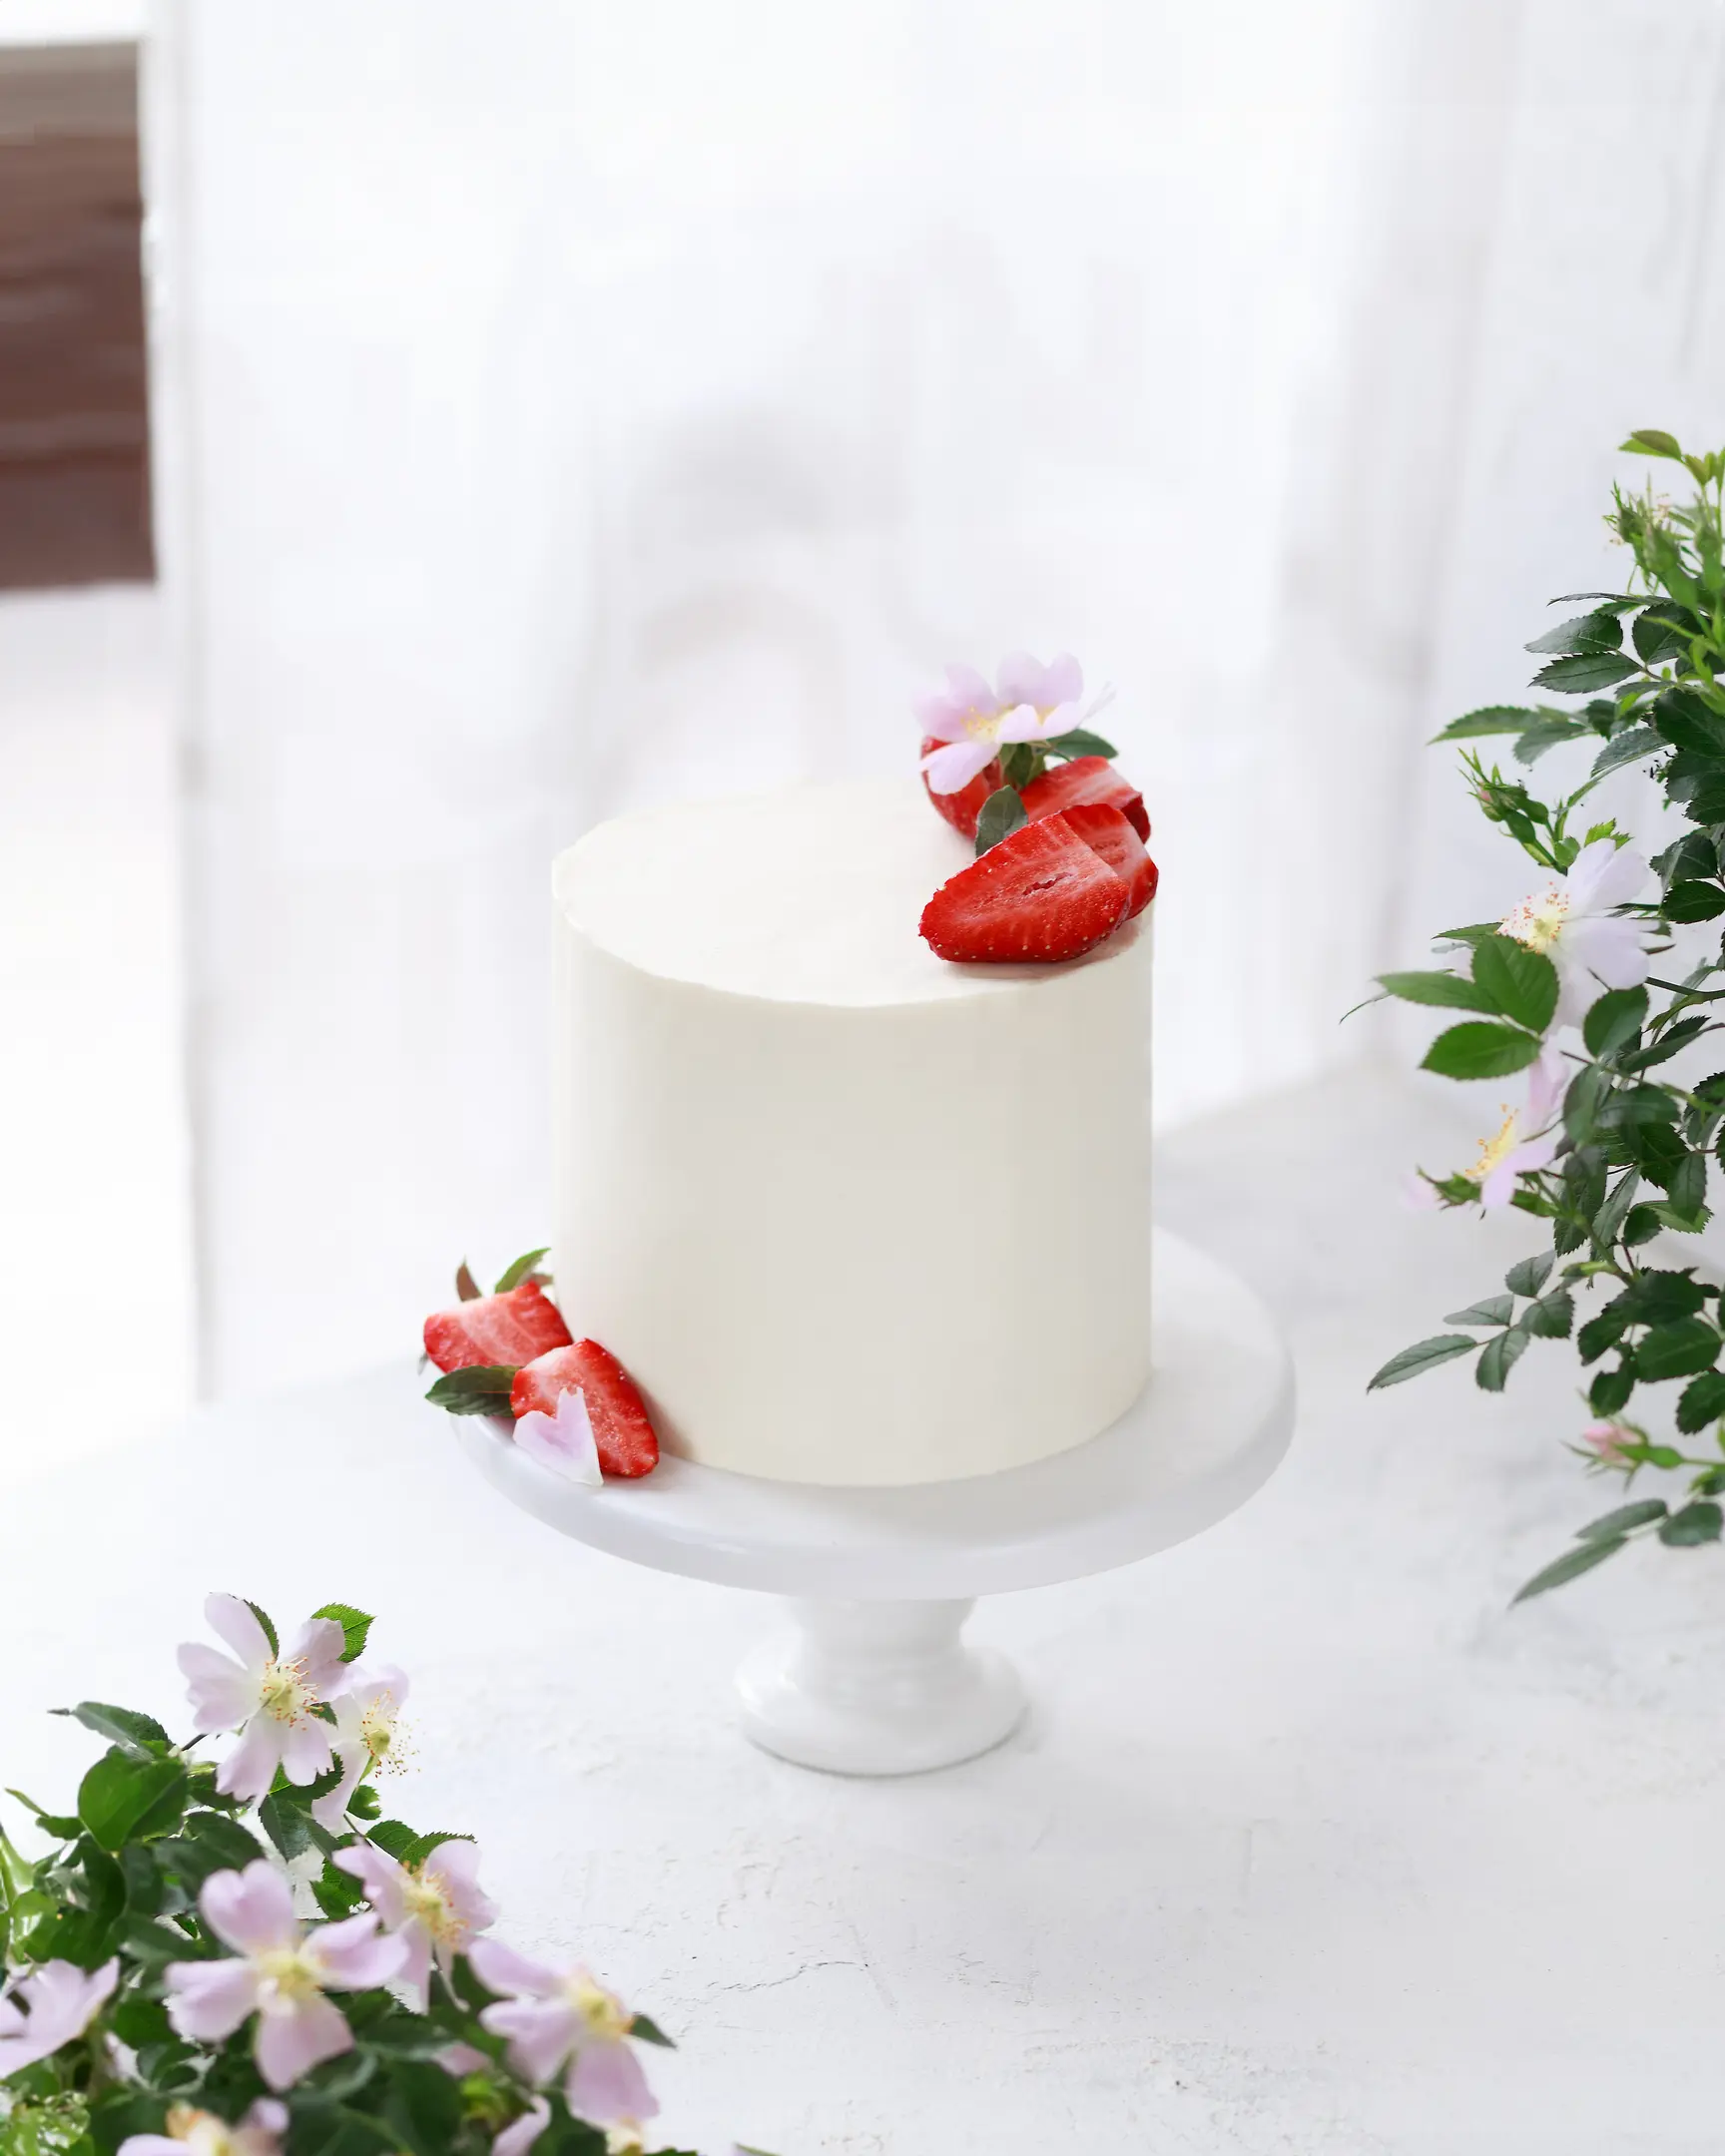 На светъл фон медена торта покрита с бял крем. На светъл фон срещу прозореца стои торта, украсена с горски плодове. Отстрани на рамката се виждат цветове от шипка.